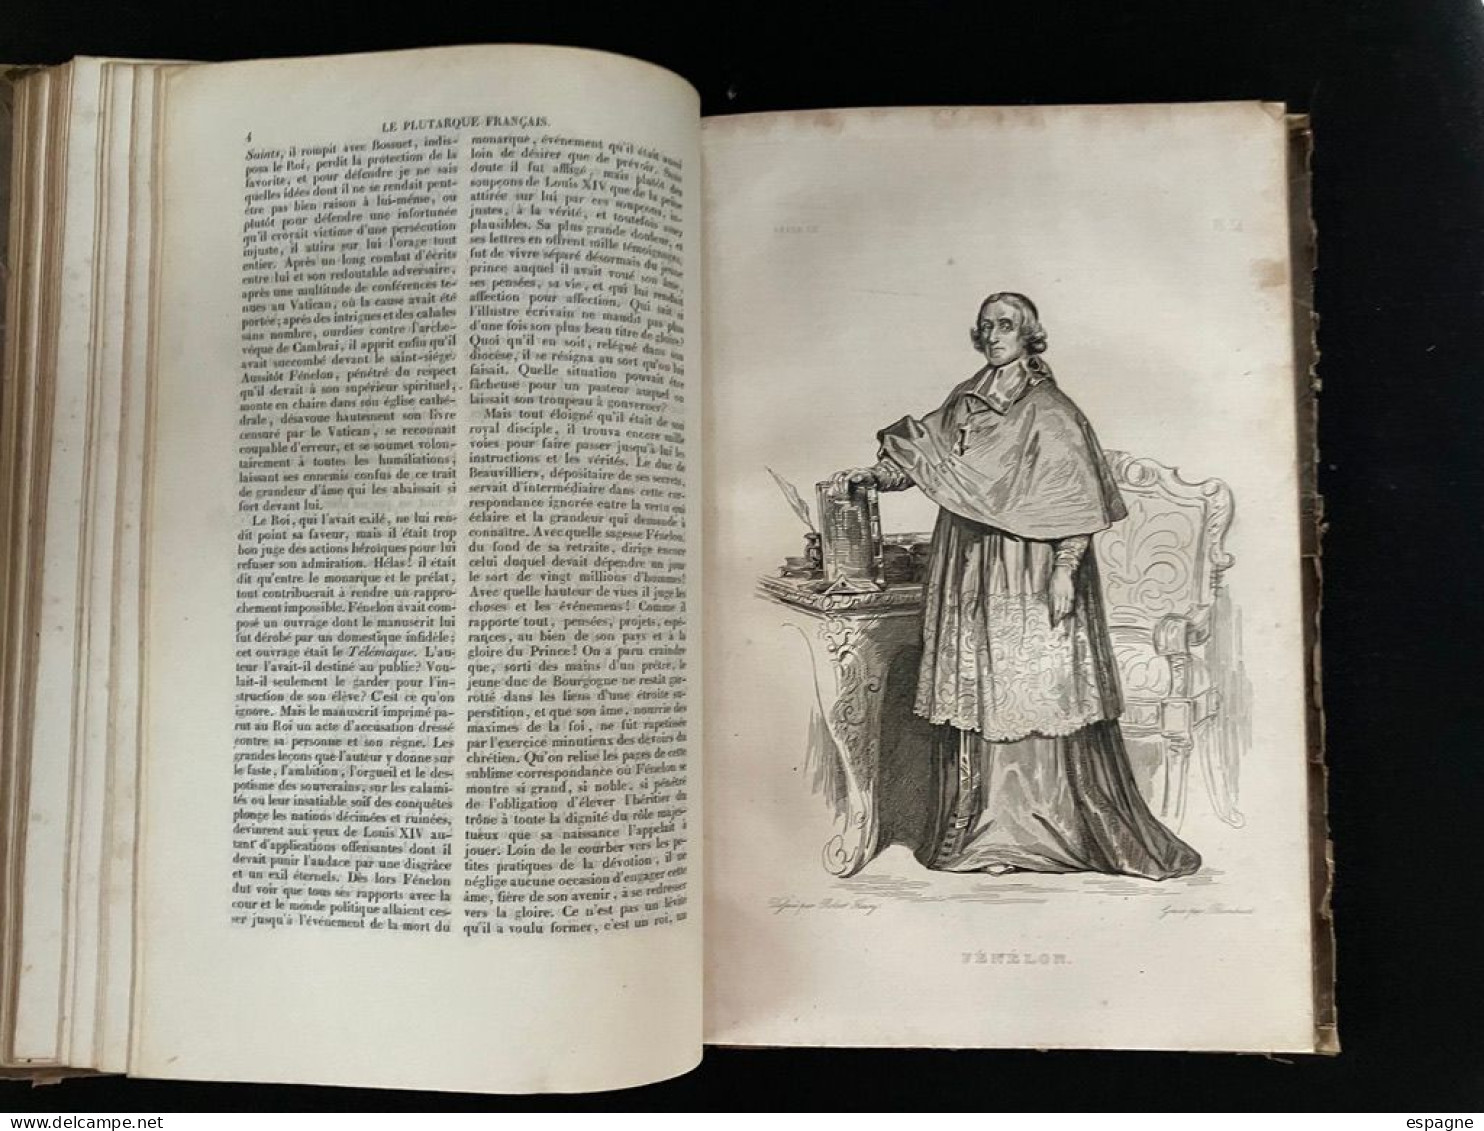 Plutarque français ensemble de biographies de personnages illustres avec illustration pour chacun  1836